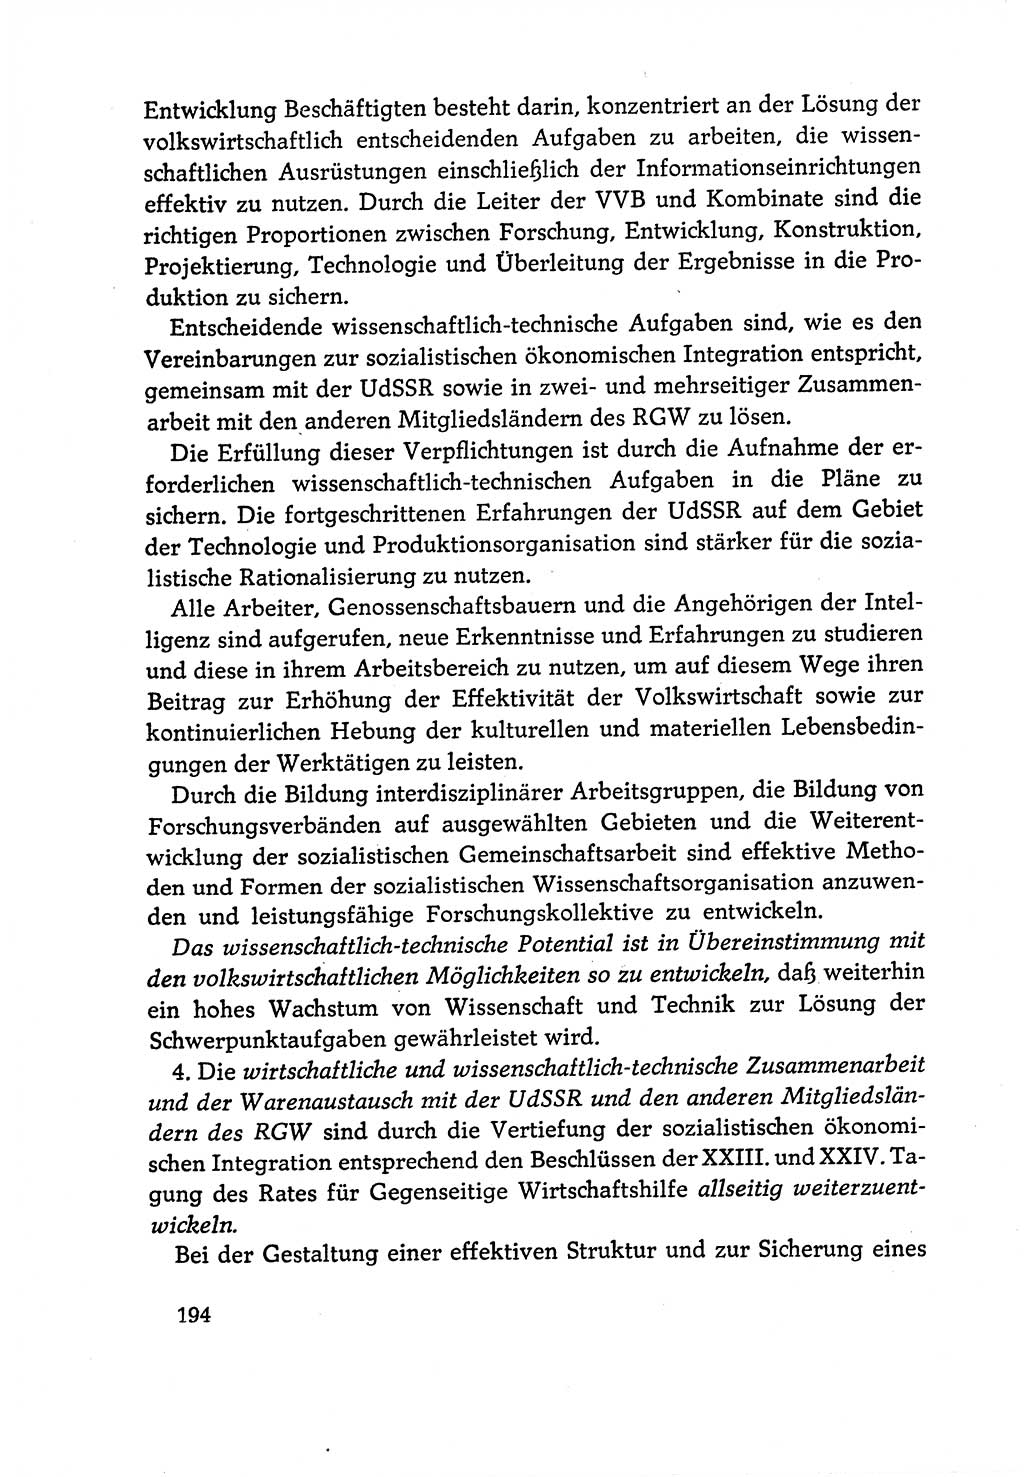 Dokumente der Sozialistischen Einheitspartei Deutschlands (SED) [Deutsche Demokratische Republik (DDR)] 1970-1971, Seite 194 (Dok. SED DDR 1970-1971, S. 194)